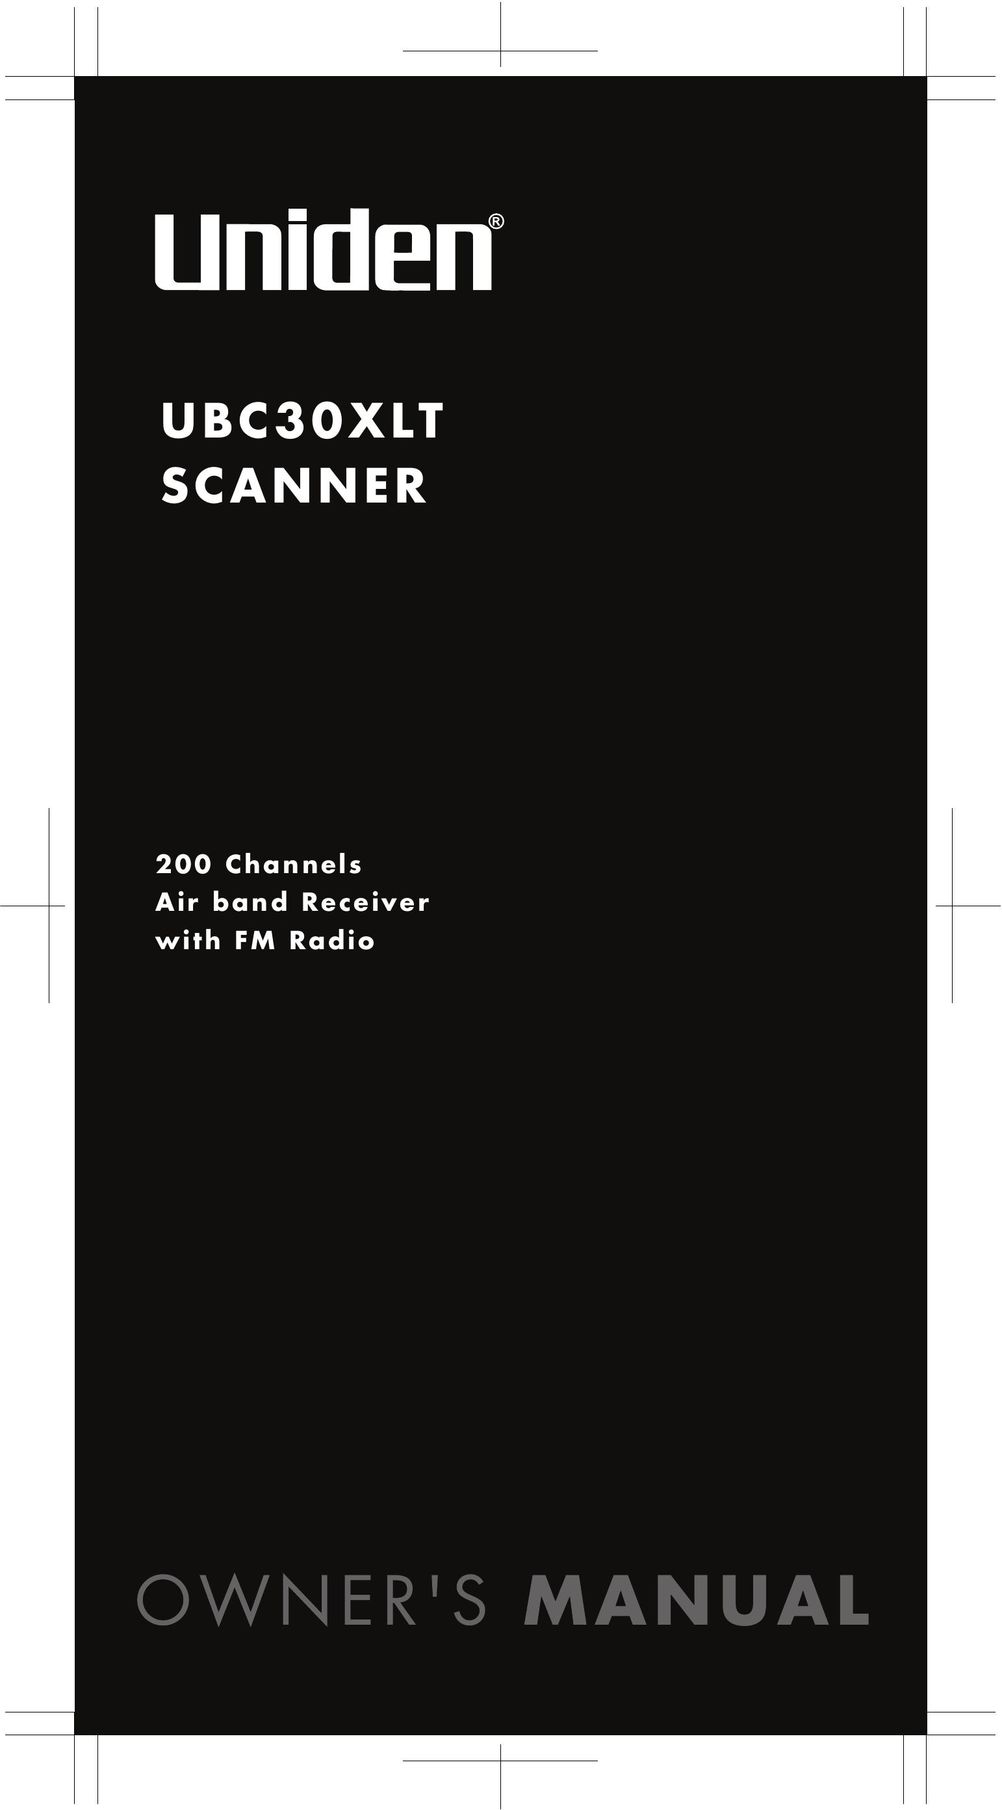 Uniden UBC30XLT Scanner User Manual